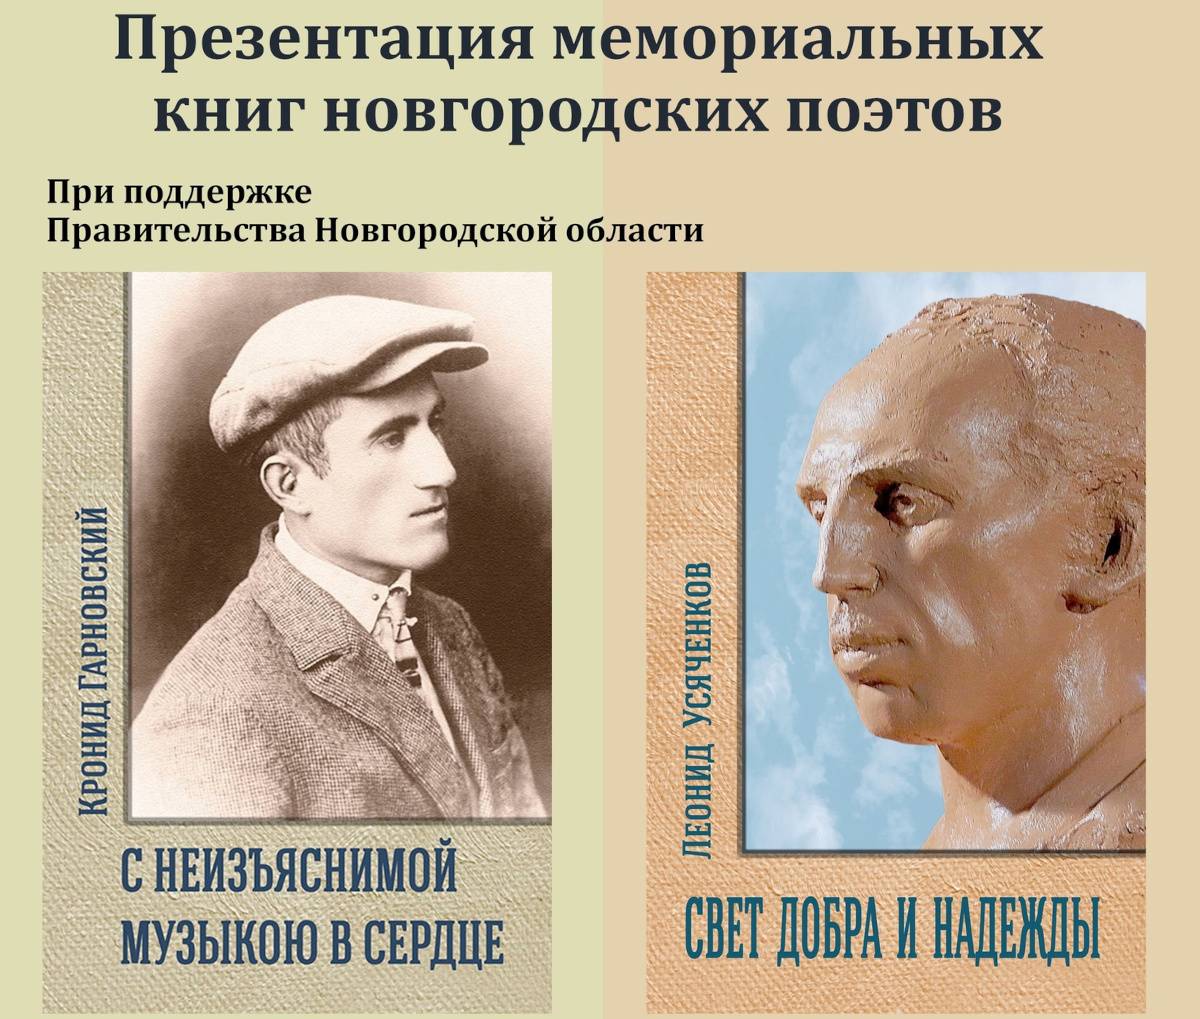 Всем пришедшим на презентацию будут вручены экземпляры сборников Кронида Гарновского и Леонида Усяченкова.